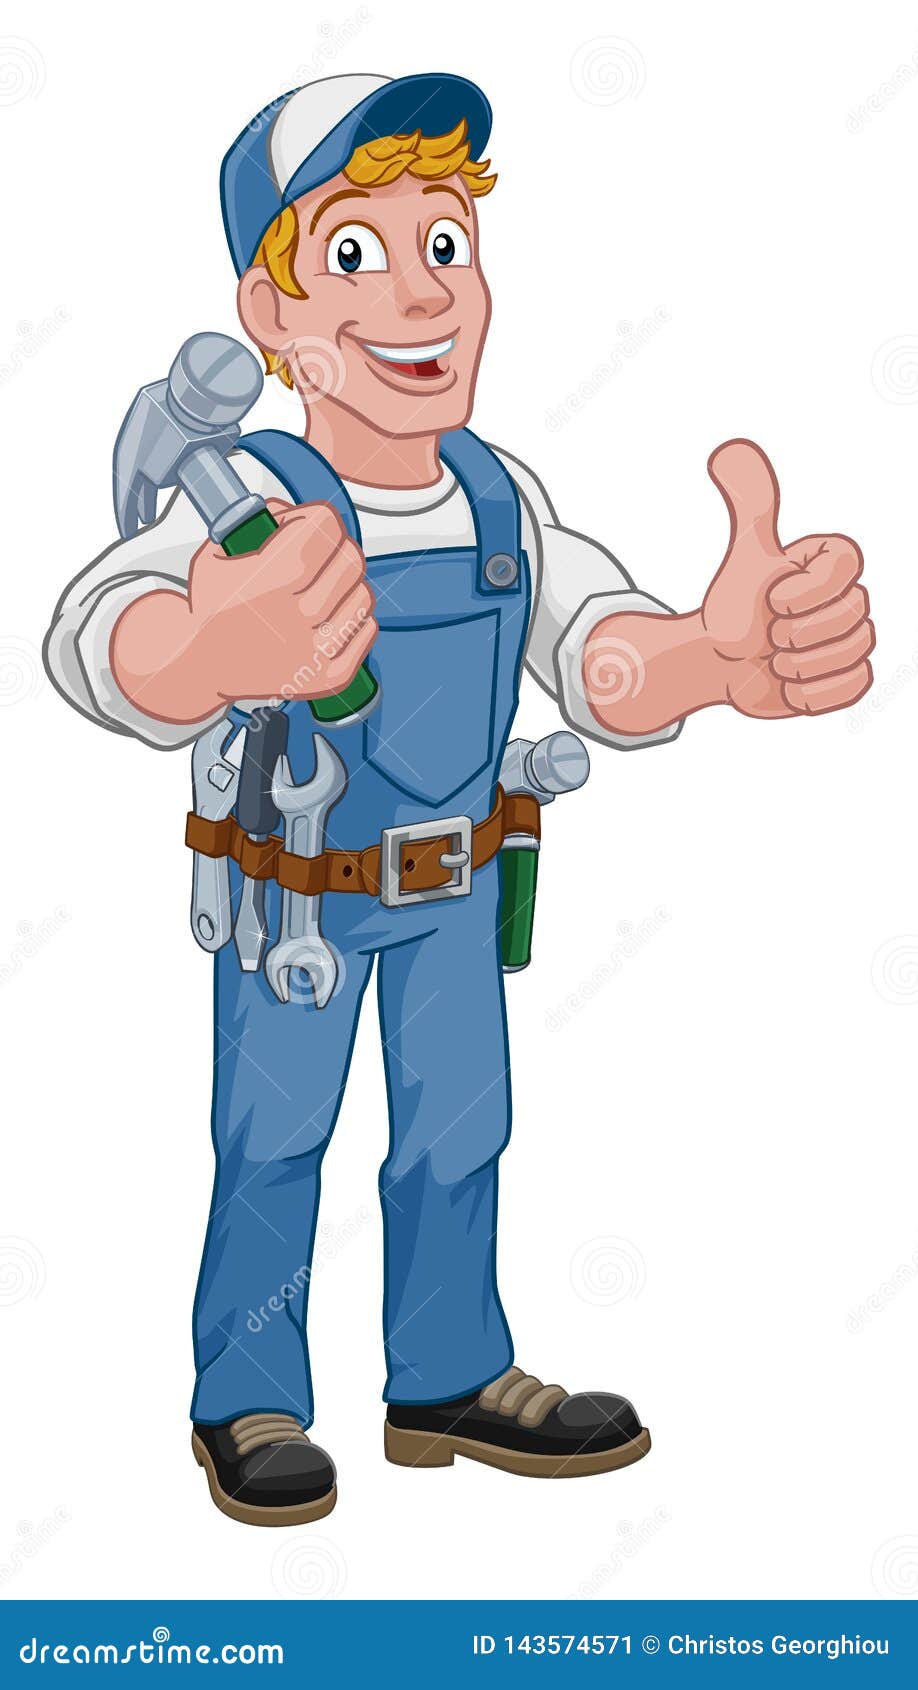 Handyman Hammer Cartoon Man DIY Carpenter Builder. A handyman carpenter or builder cartoon man holding a hammer. Construction maintenance worker or DIY character mascot. Giving a thumbs up.